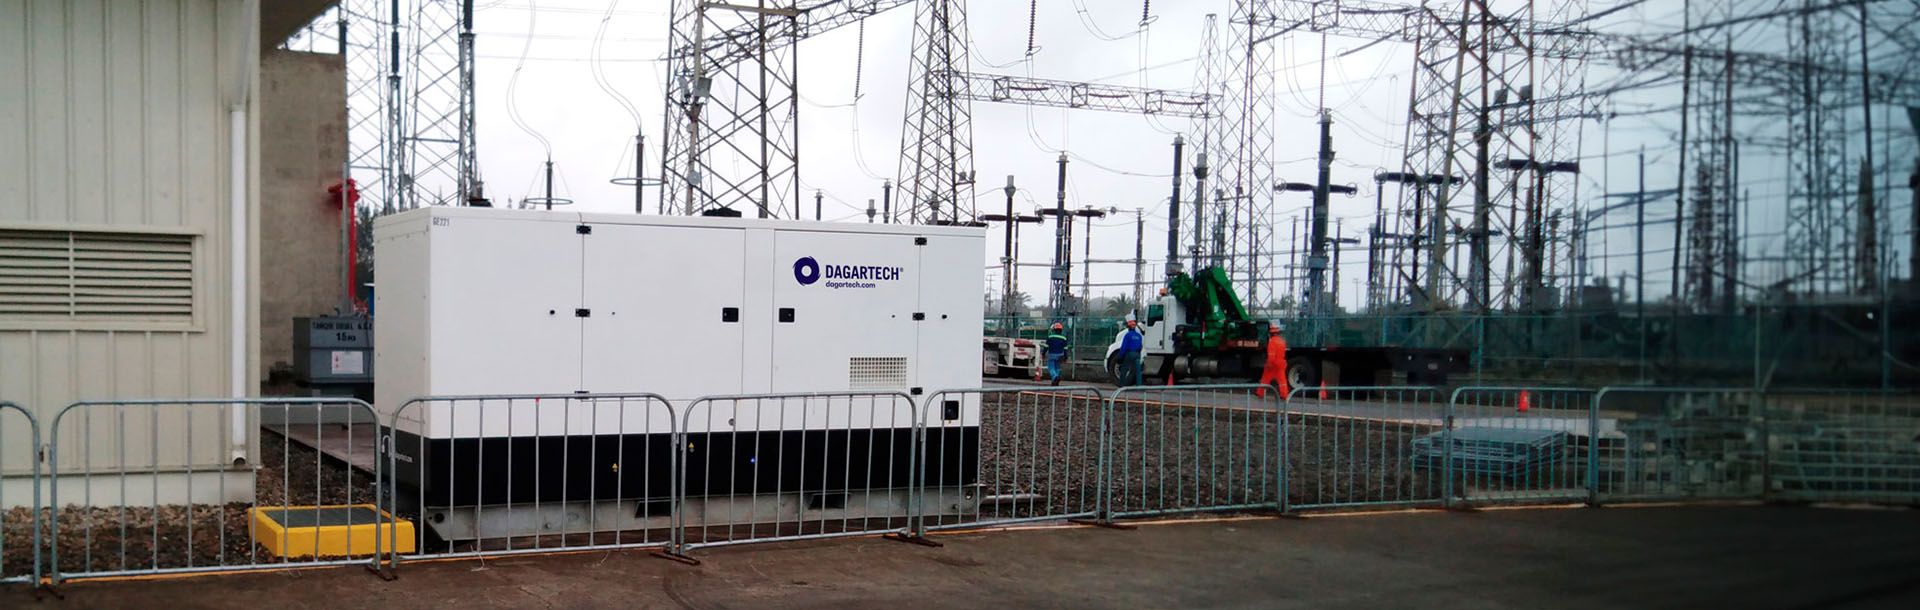 4800 kW Leistung von Dagartech sichern die Wartung des thermoelektrischen Kraftwerks Tuxpan, Mexiko.